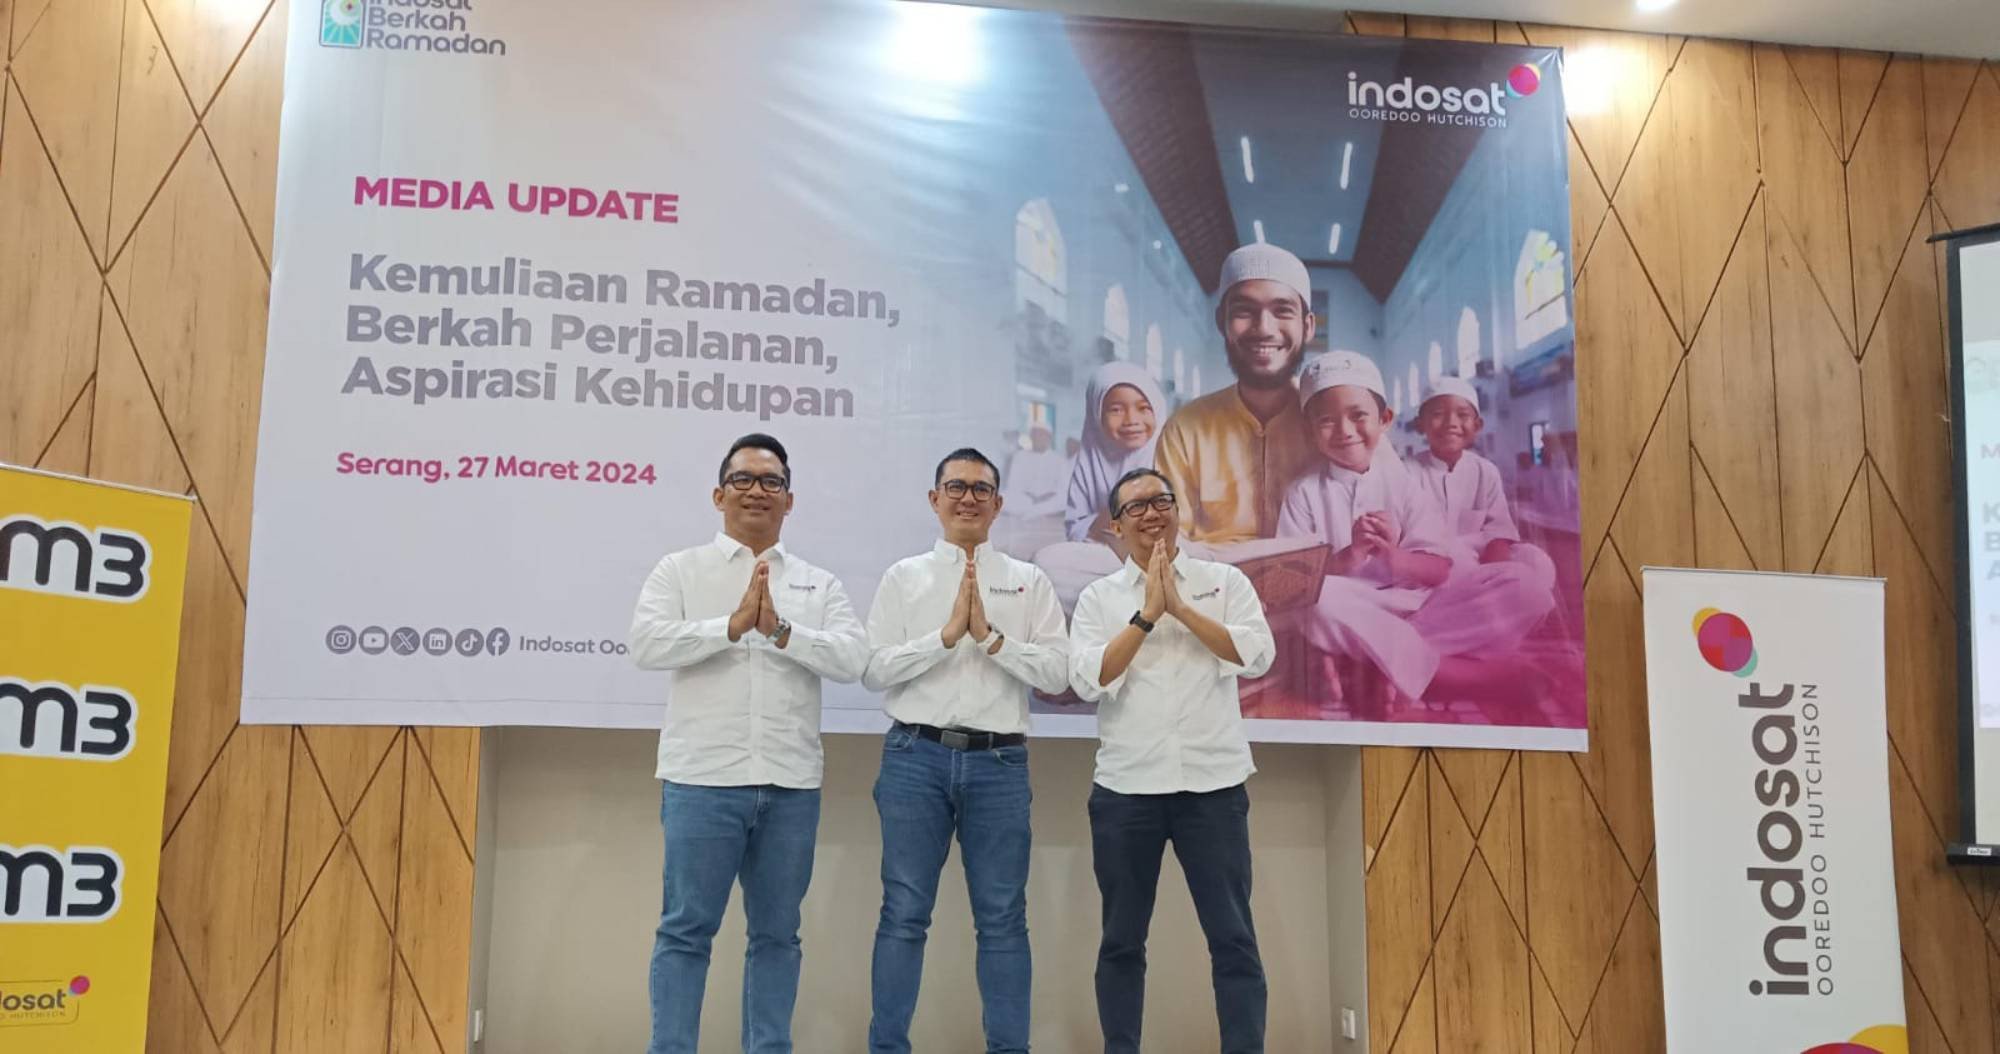 Selama Ramadan, Indosat Siap Menawarkan Penawaran Menarik kepada Hampir 100 Juta Pelanggannya